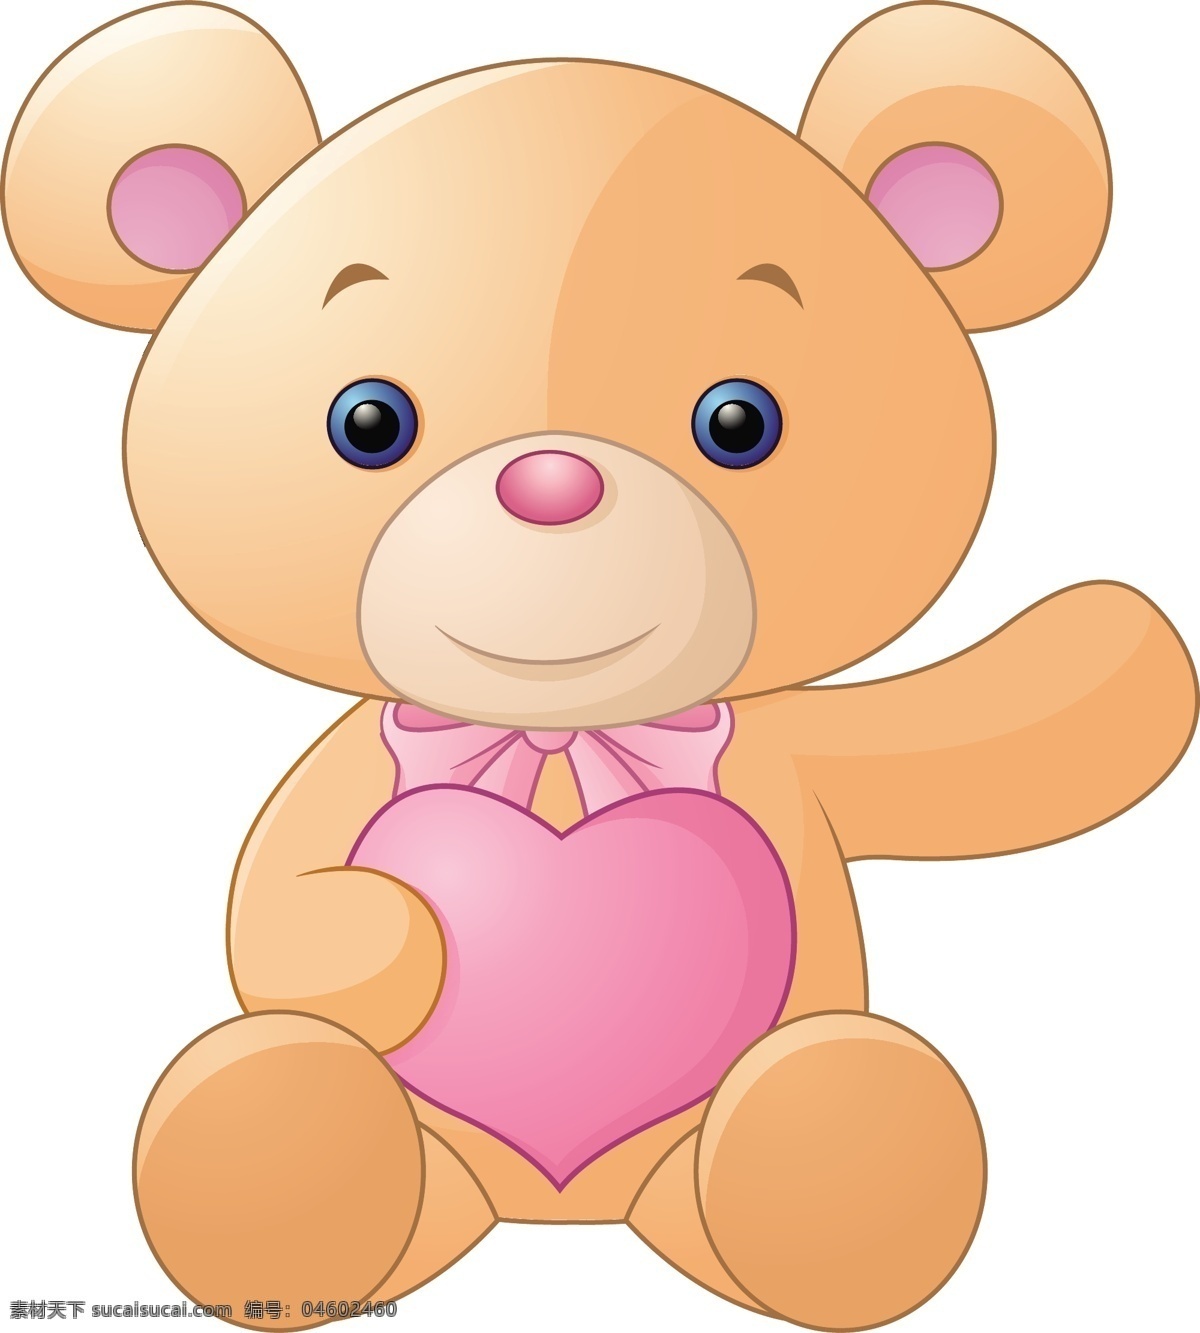 抱 颗 心 爱 小 熊 抱着 一颗心 有爱 小熊